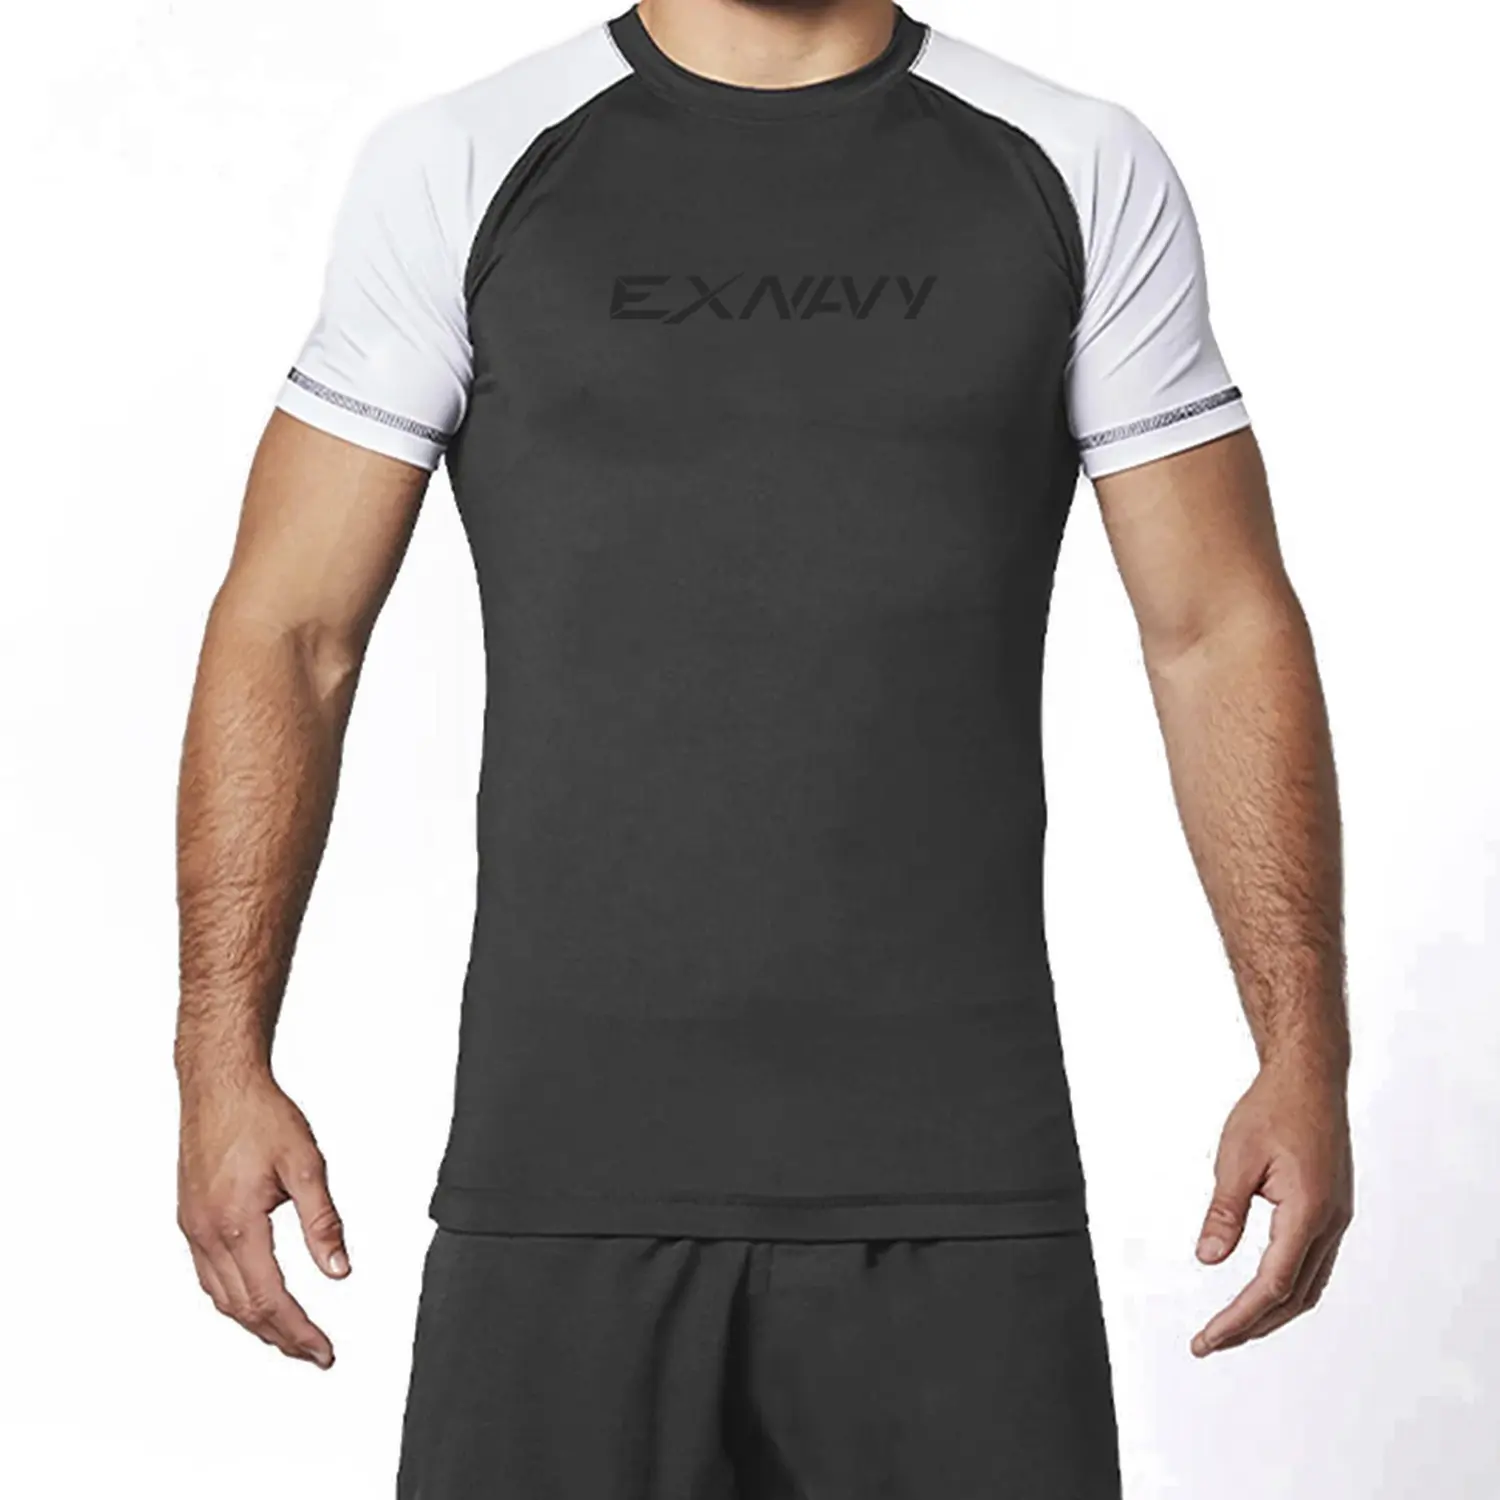 Phát ban bảo vệ thiết lập màu đen cao điểm bảo vệ người đàn ông mồ hôi bằng chứng undershirts hàng đầu thể thao cao cấp tất cả các môn thể thao unisex lõi áo lót